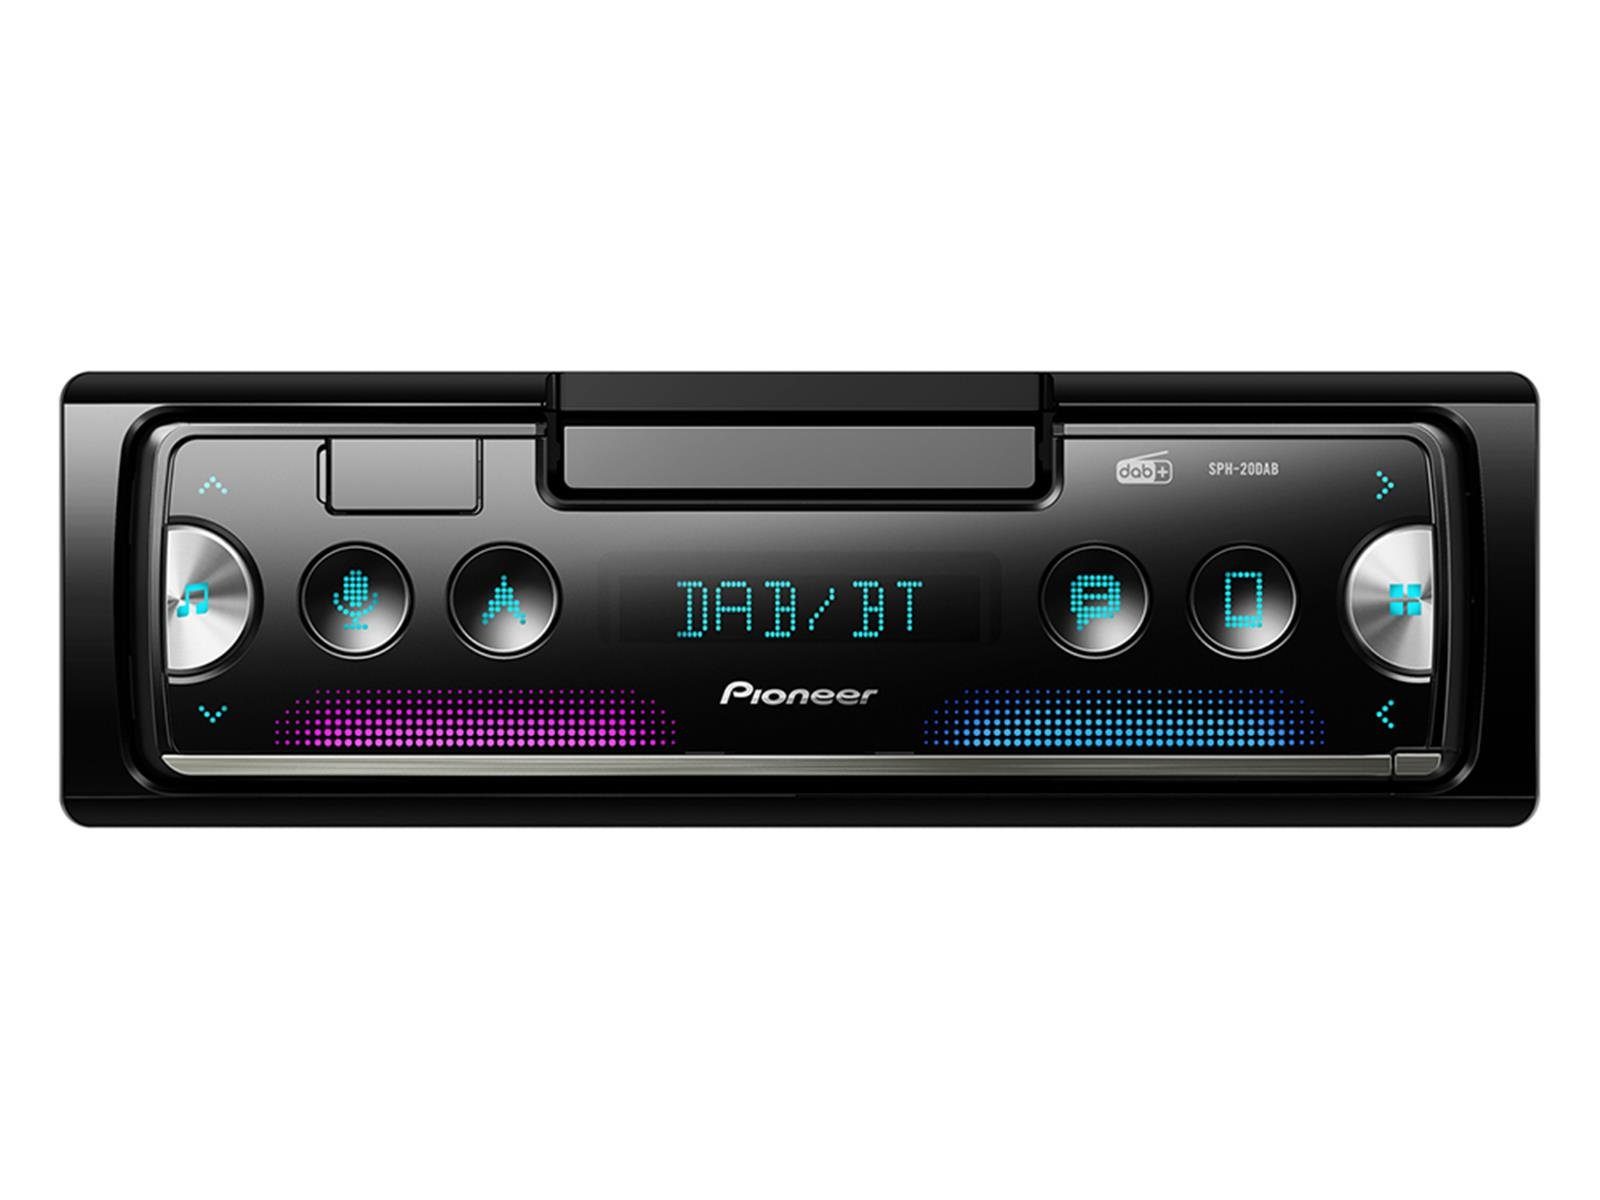 Pioneer MVH-S520DAB Autoradio DAB+ Tuner, Bluetooth®- Freisprecheinrichtung, AppRadio